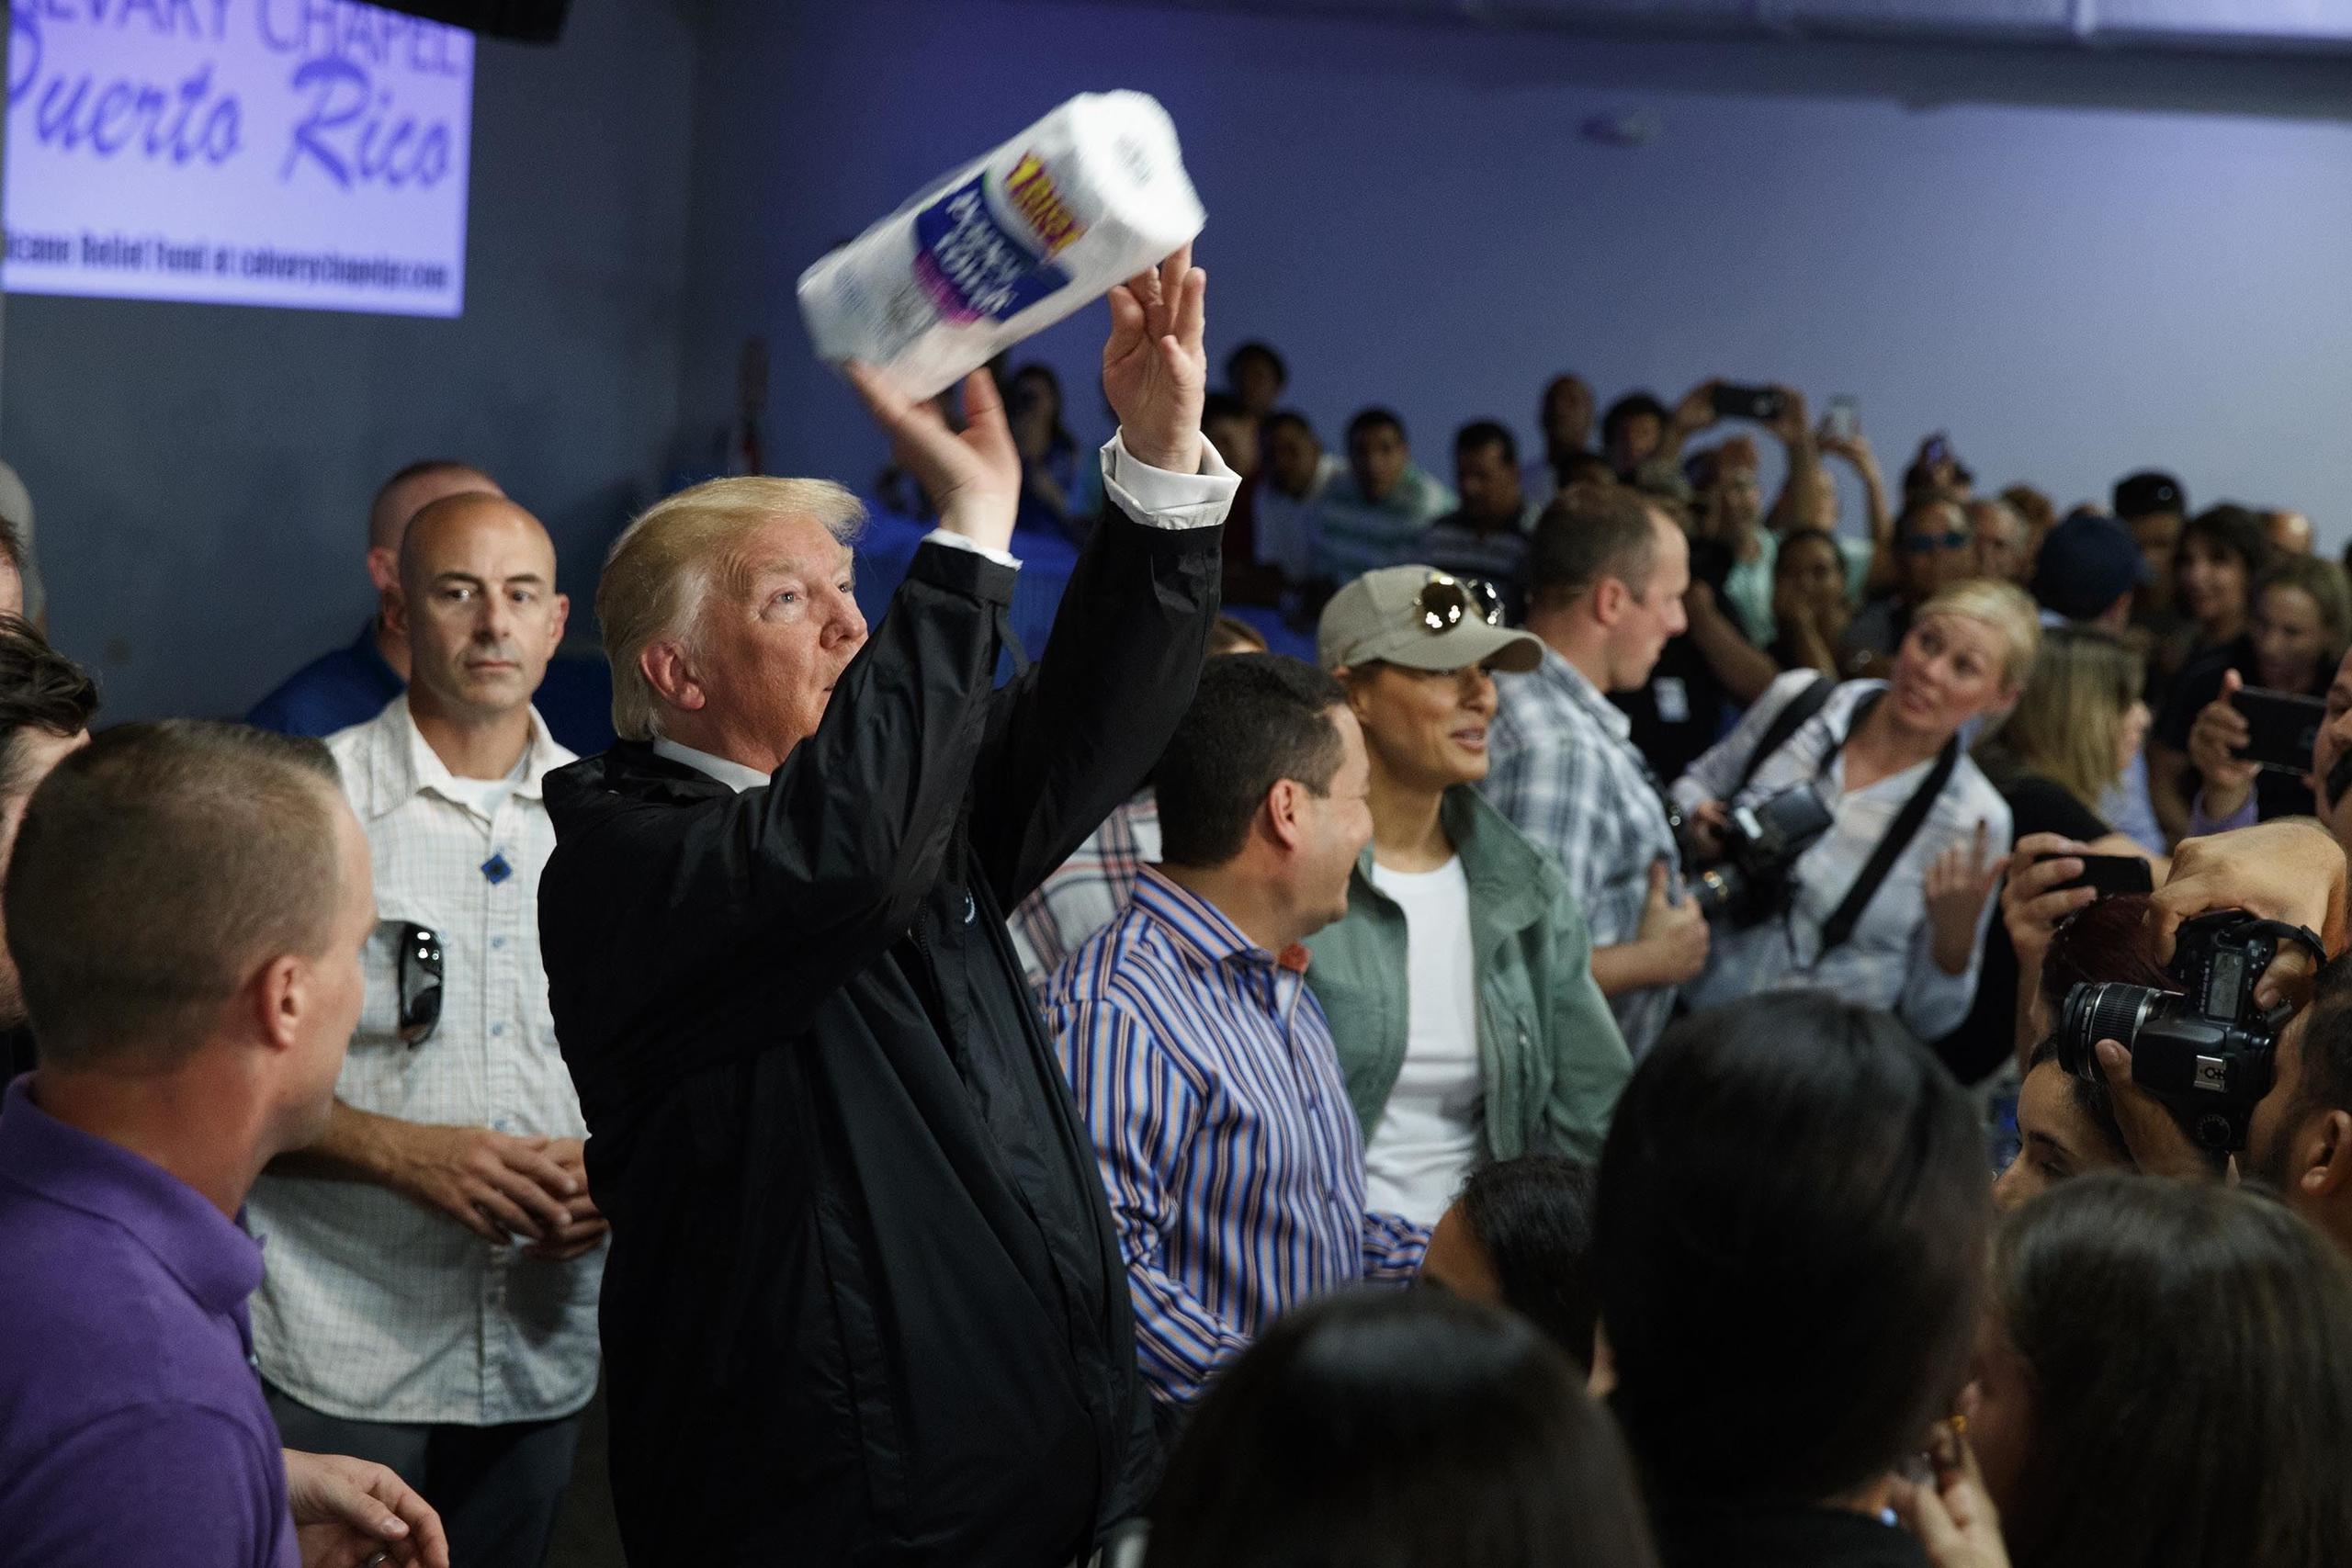 El presidente Trump lanza un papel toalla a los que estaban presentes en la iglesia evangélica. (AP / Evan Vucci)